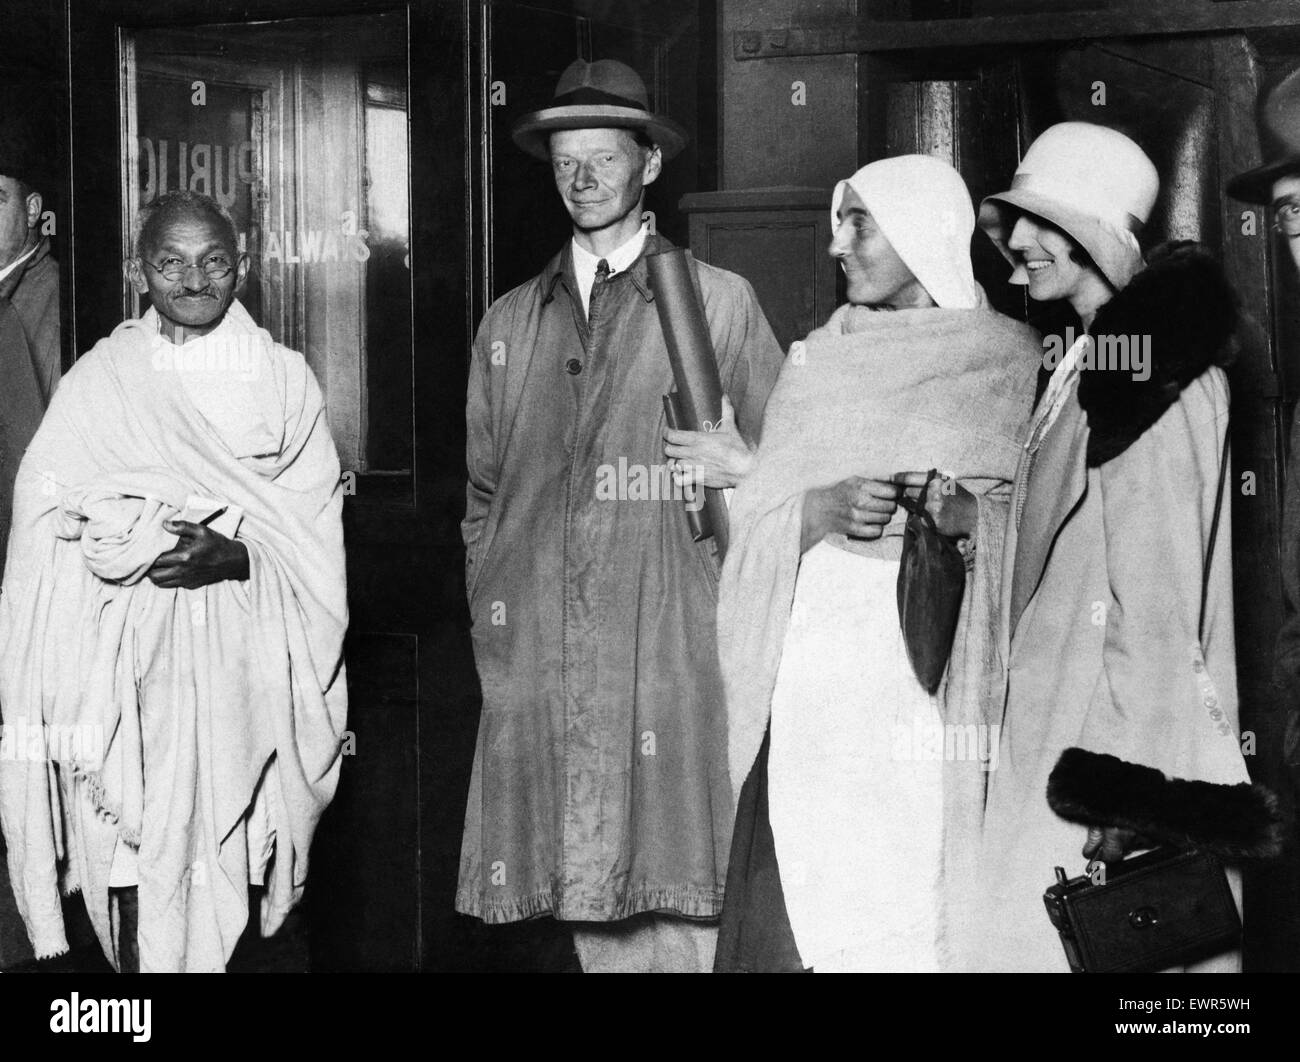 Mohandas "Mahatma" Gandhi, Führer der indischen Unabhängigkeitsbewegung im britisch beherrschten Indien, während seines Besuchs in Großbritannien im Jahre 1931 abgebildet. Hier ist er am Bahnhof Birmingham New Street abgebildet vor seiner Abreise nach London, begleitet von Herrn H G Alexa Stockfoto